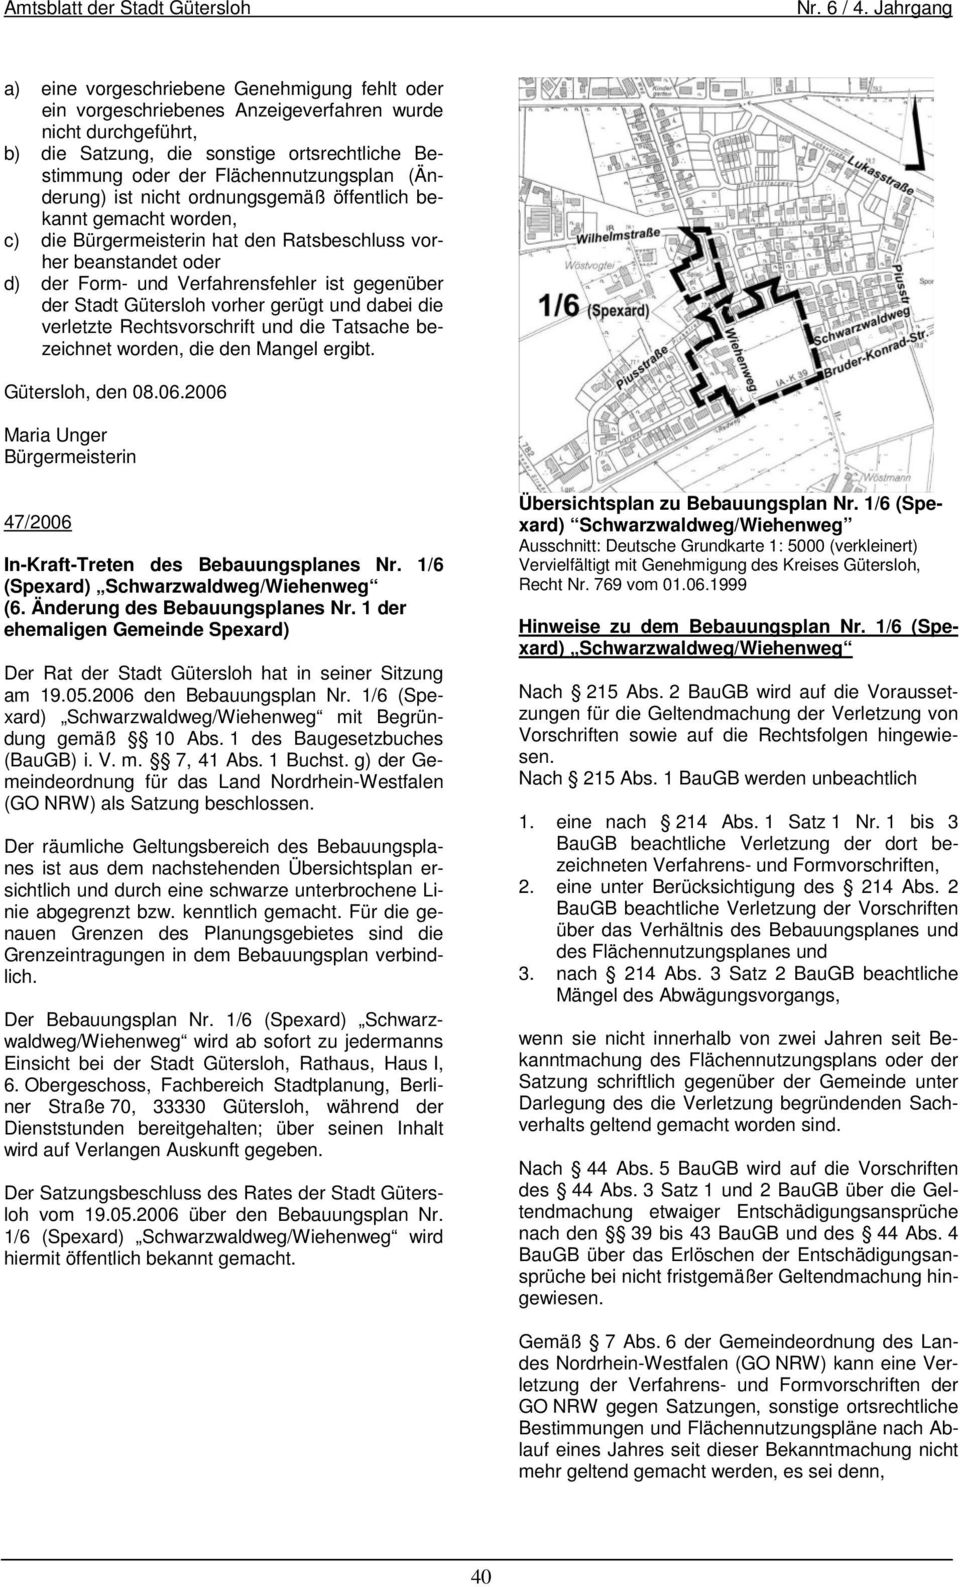 Bebauungsplanes Nr. 1/6 (Spexard) Schwarzwaldweg/Wiehenweg (6. Änderung des Bebauungsplanes Nr. 1 der ehemaligen Gemeinde Spexard) Der Rat der Stadt Gütersloh hat in seiner Sitzung am 19.05.